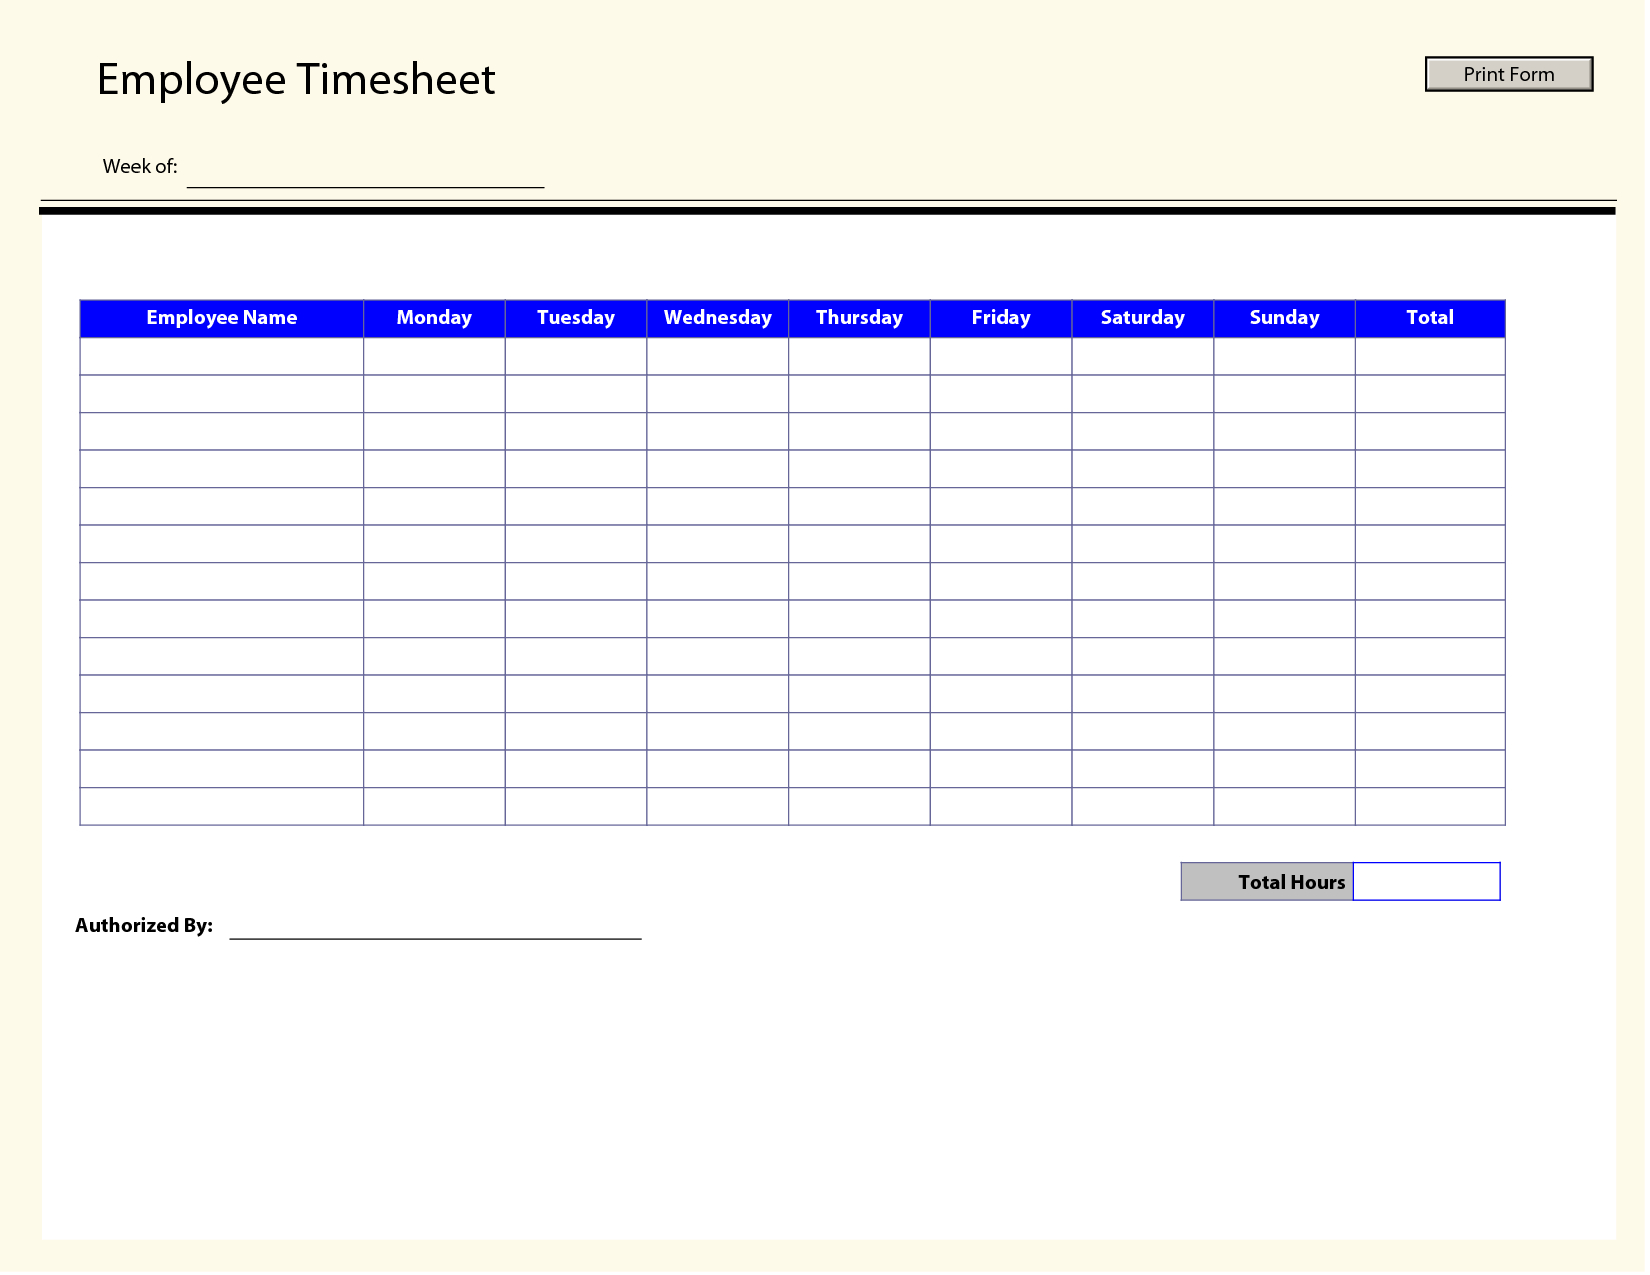 Printable Time Sheets | Free Printable Employee Timesheets Employee - Free Printable Time Sheets Forms